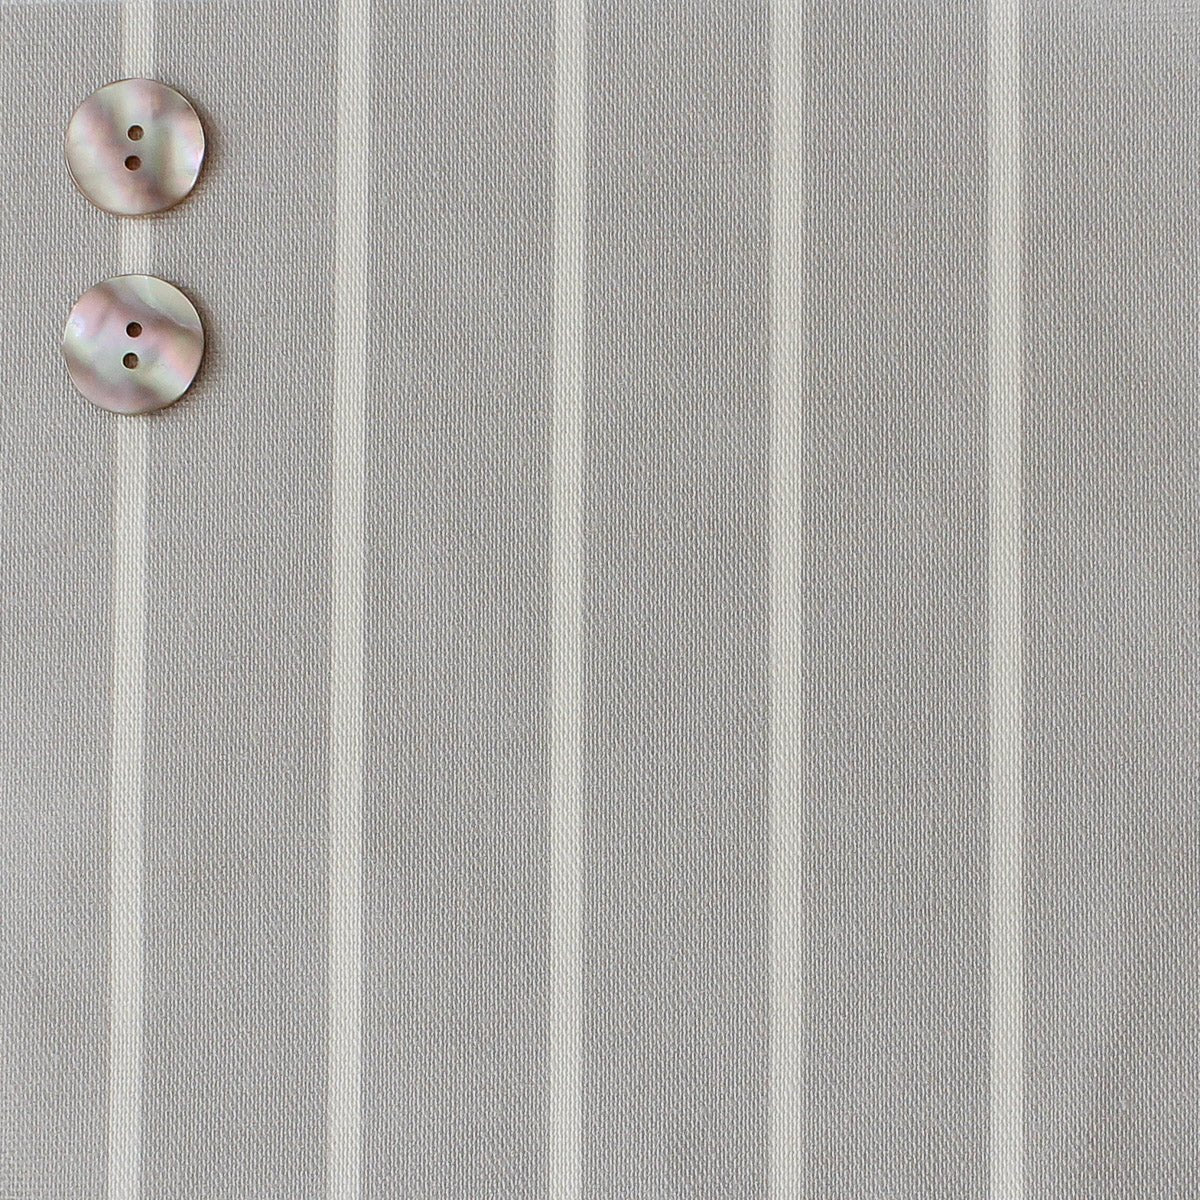 Breton Stripe Reverse Fabric - Dove - Hydrangea Lane Home